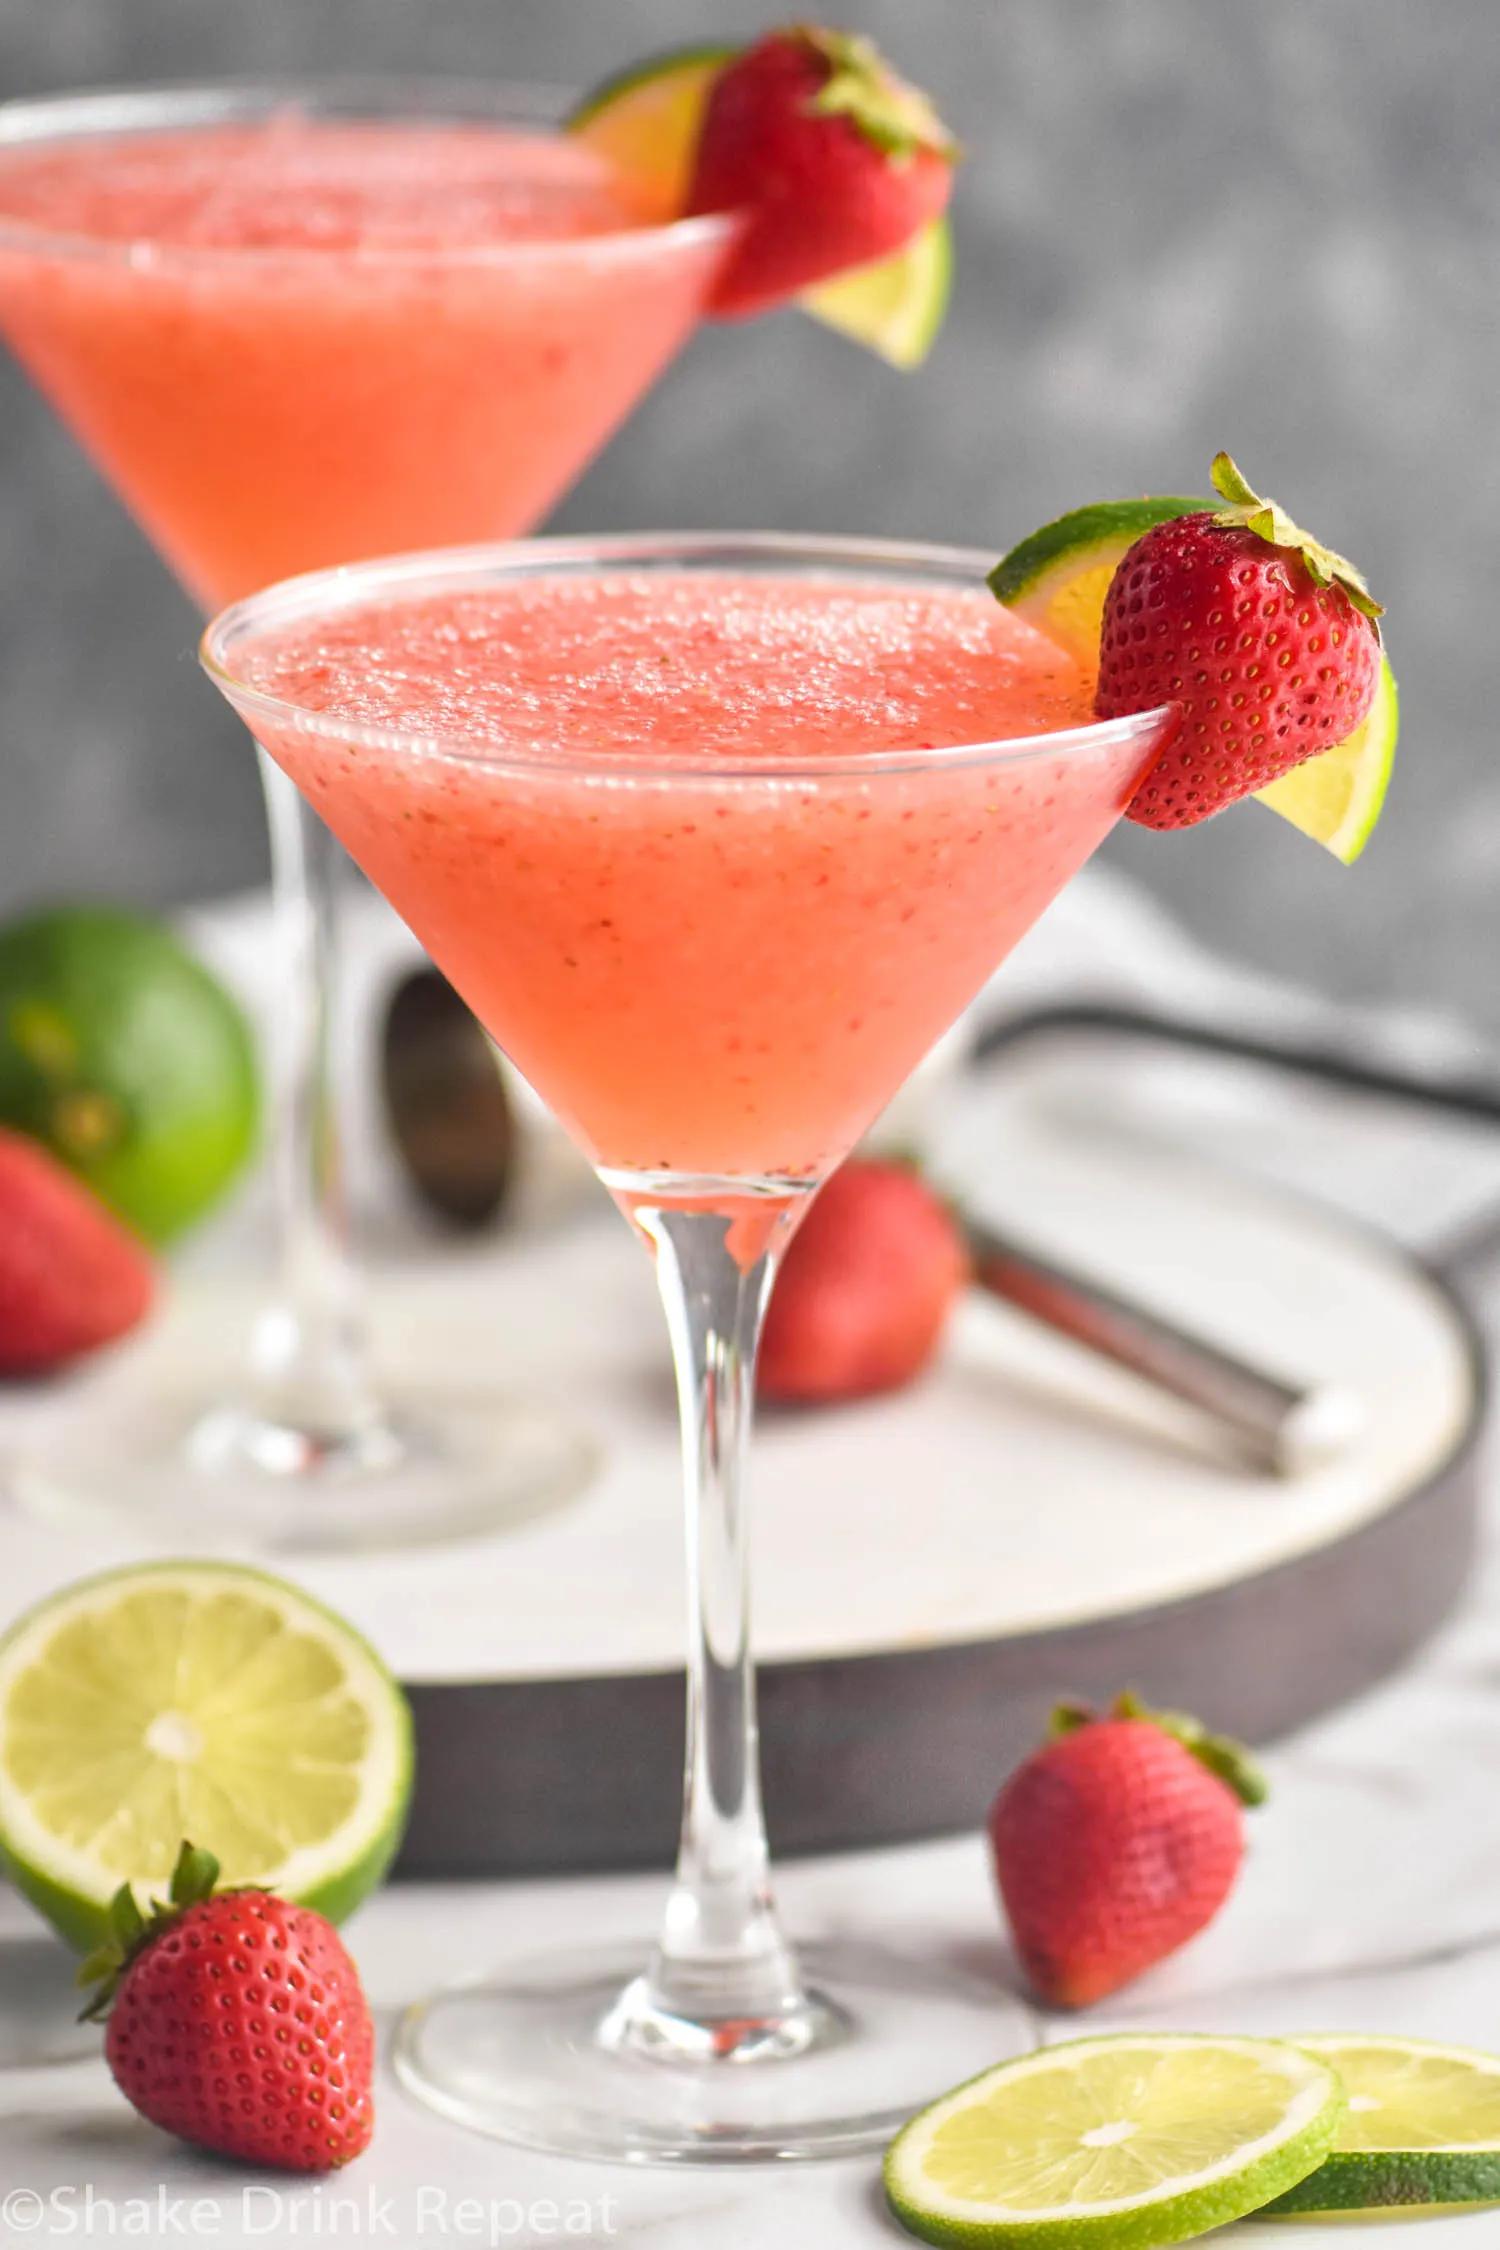 Strawberry Daiquiri - Shake Drink Repeat